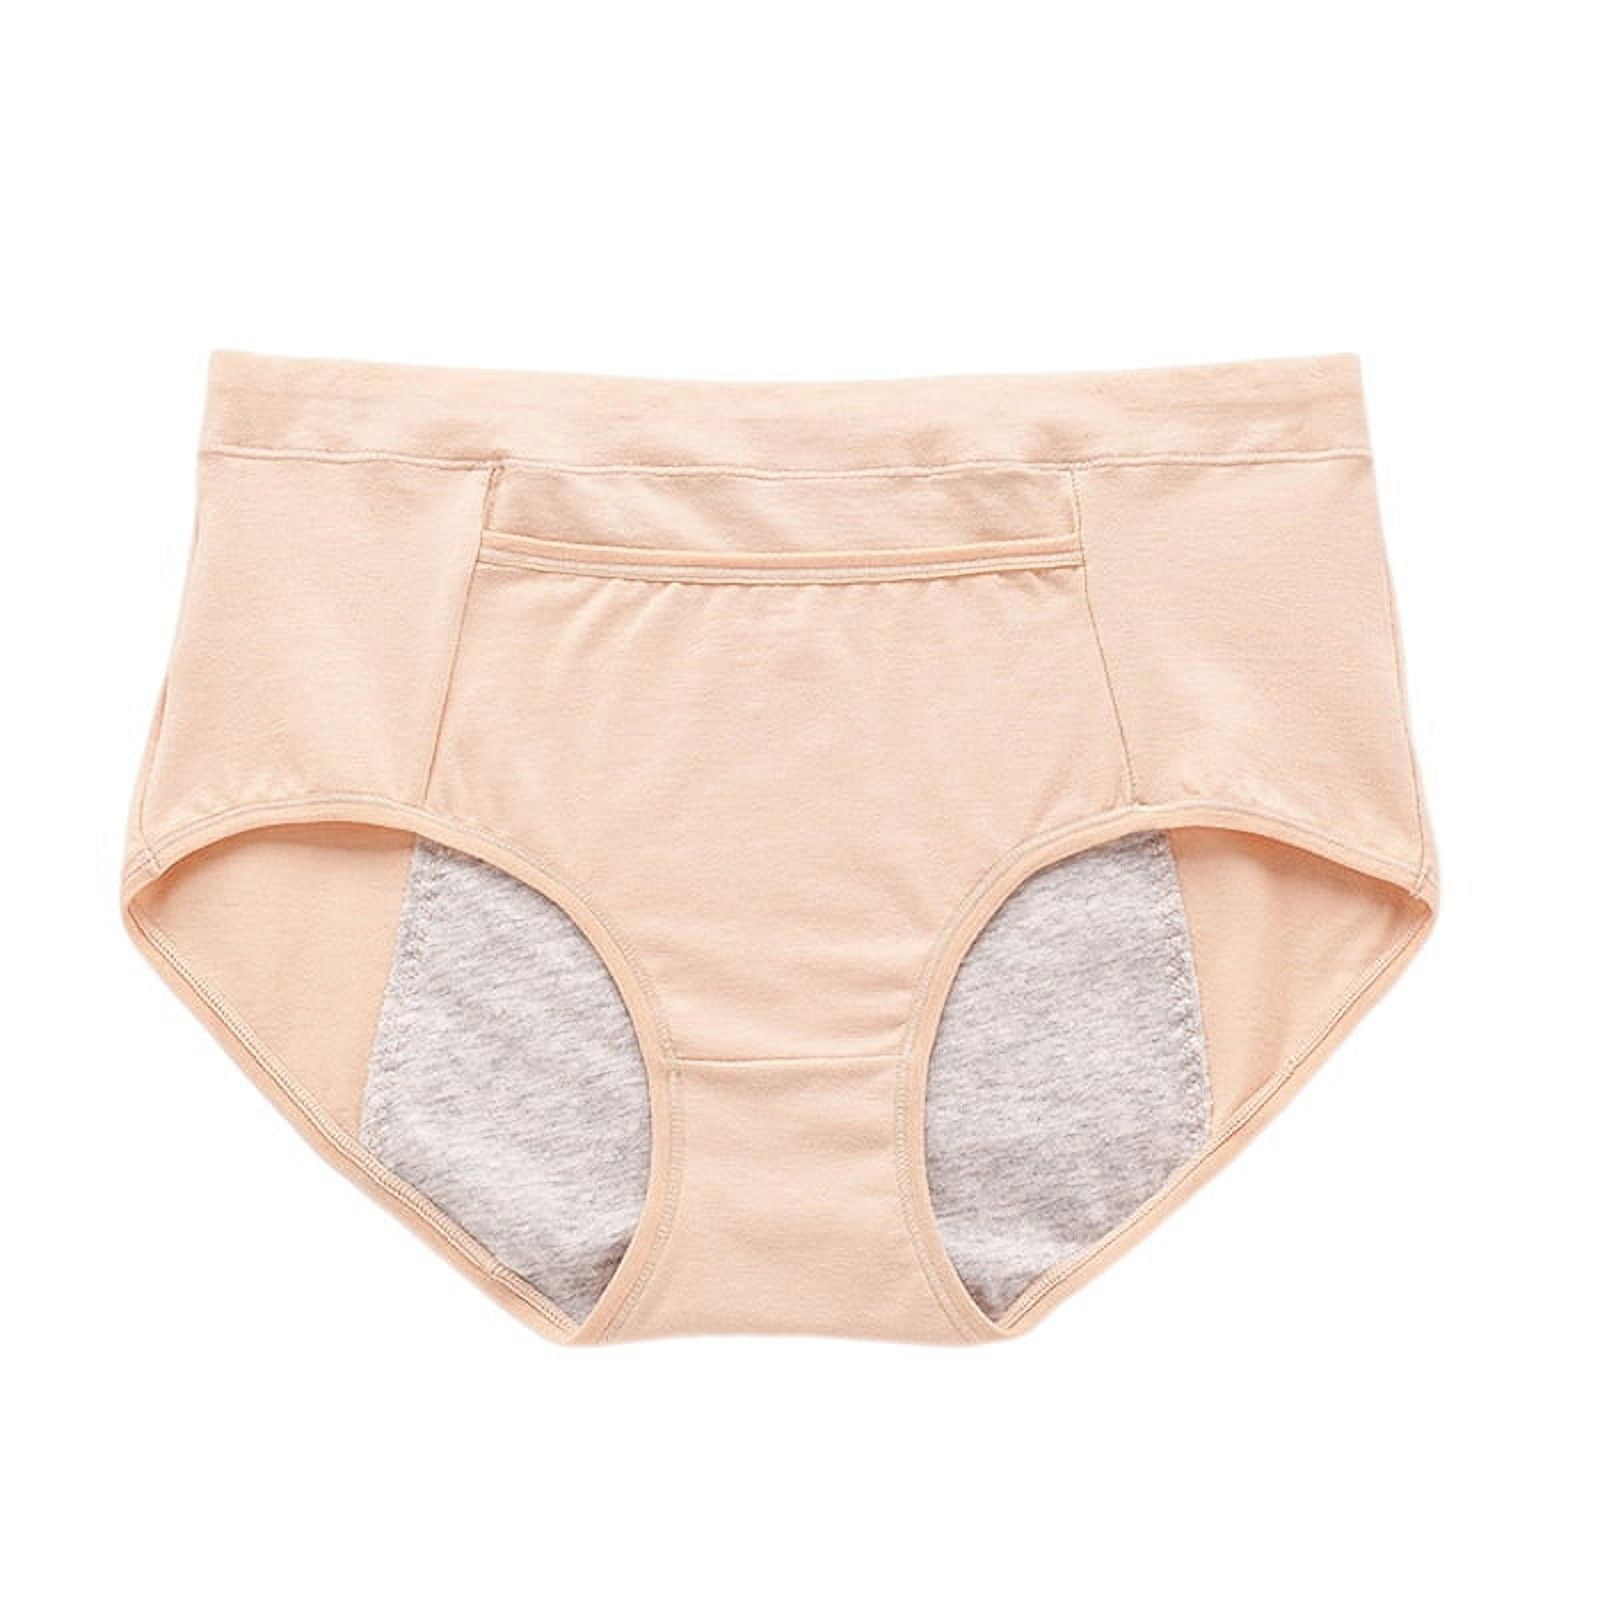 Women's Super Soft Underwear with Hidden Front Pocket Leak Proof Menstrual  Panties Postpartum Protective Briefs 